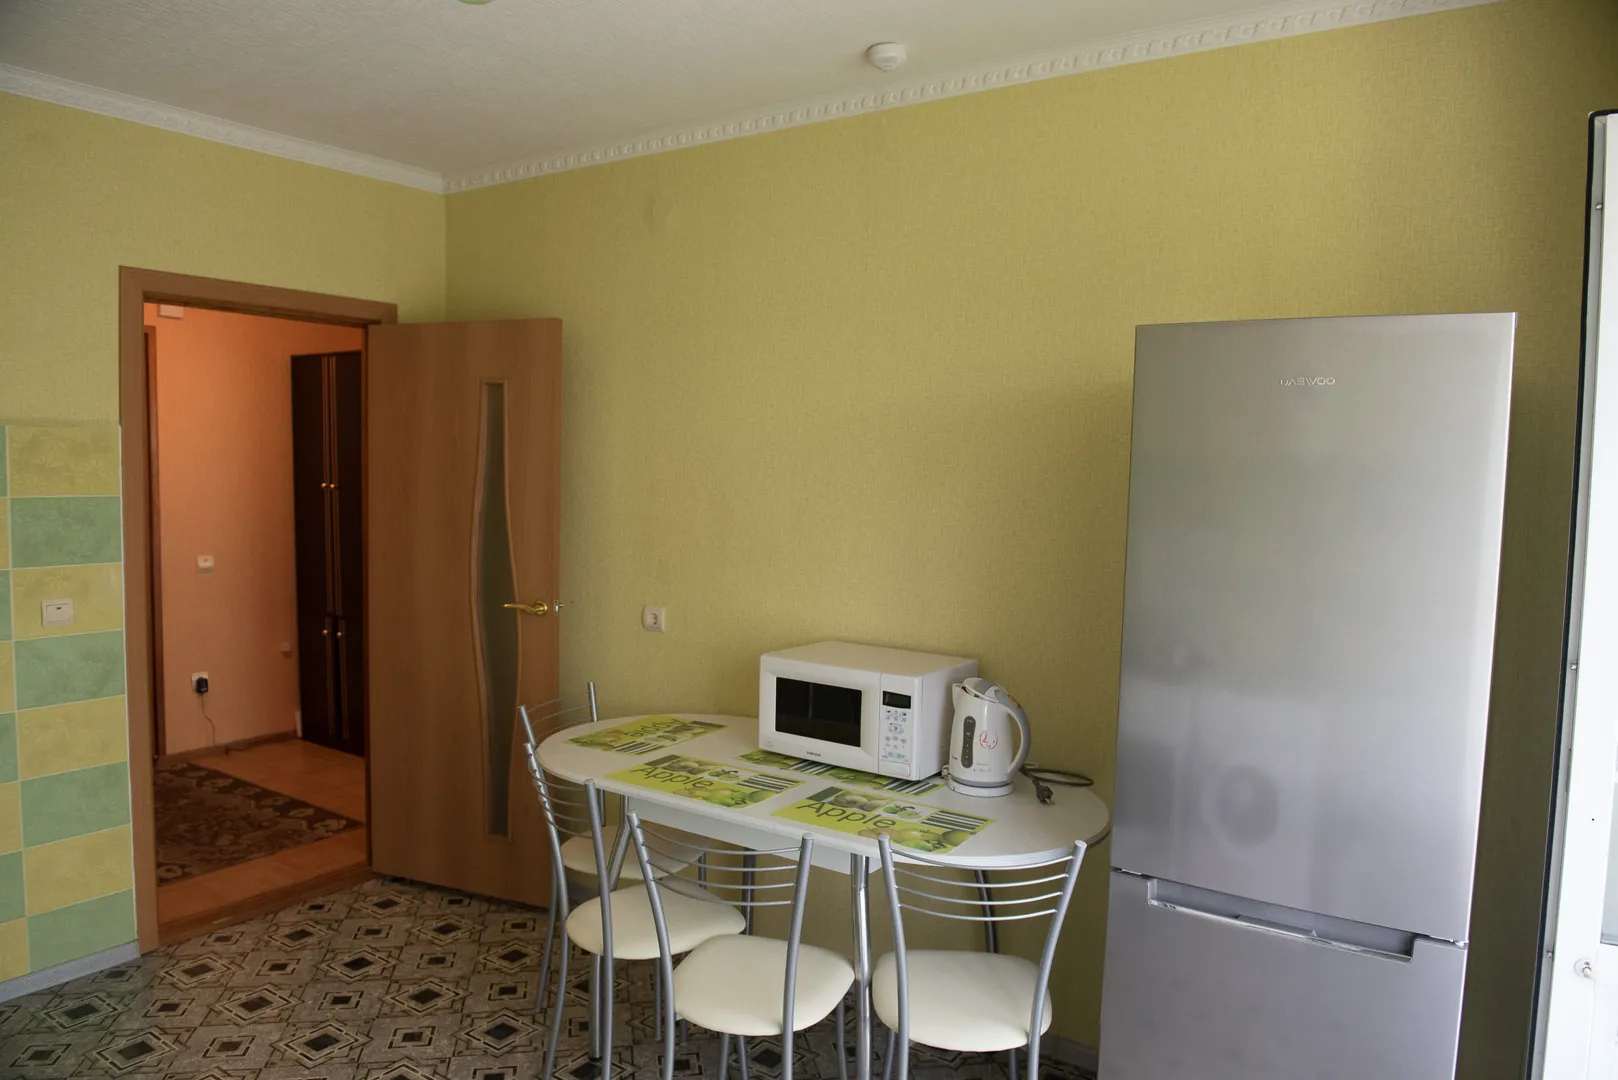 Просторная кухня: современная и удобная обеденная зона, стол, стулья, СВЧ-печь, вместительный холодильник, электрочайник